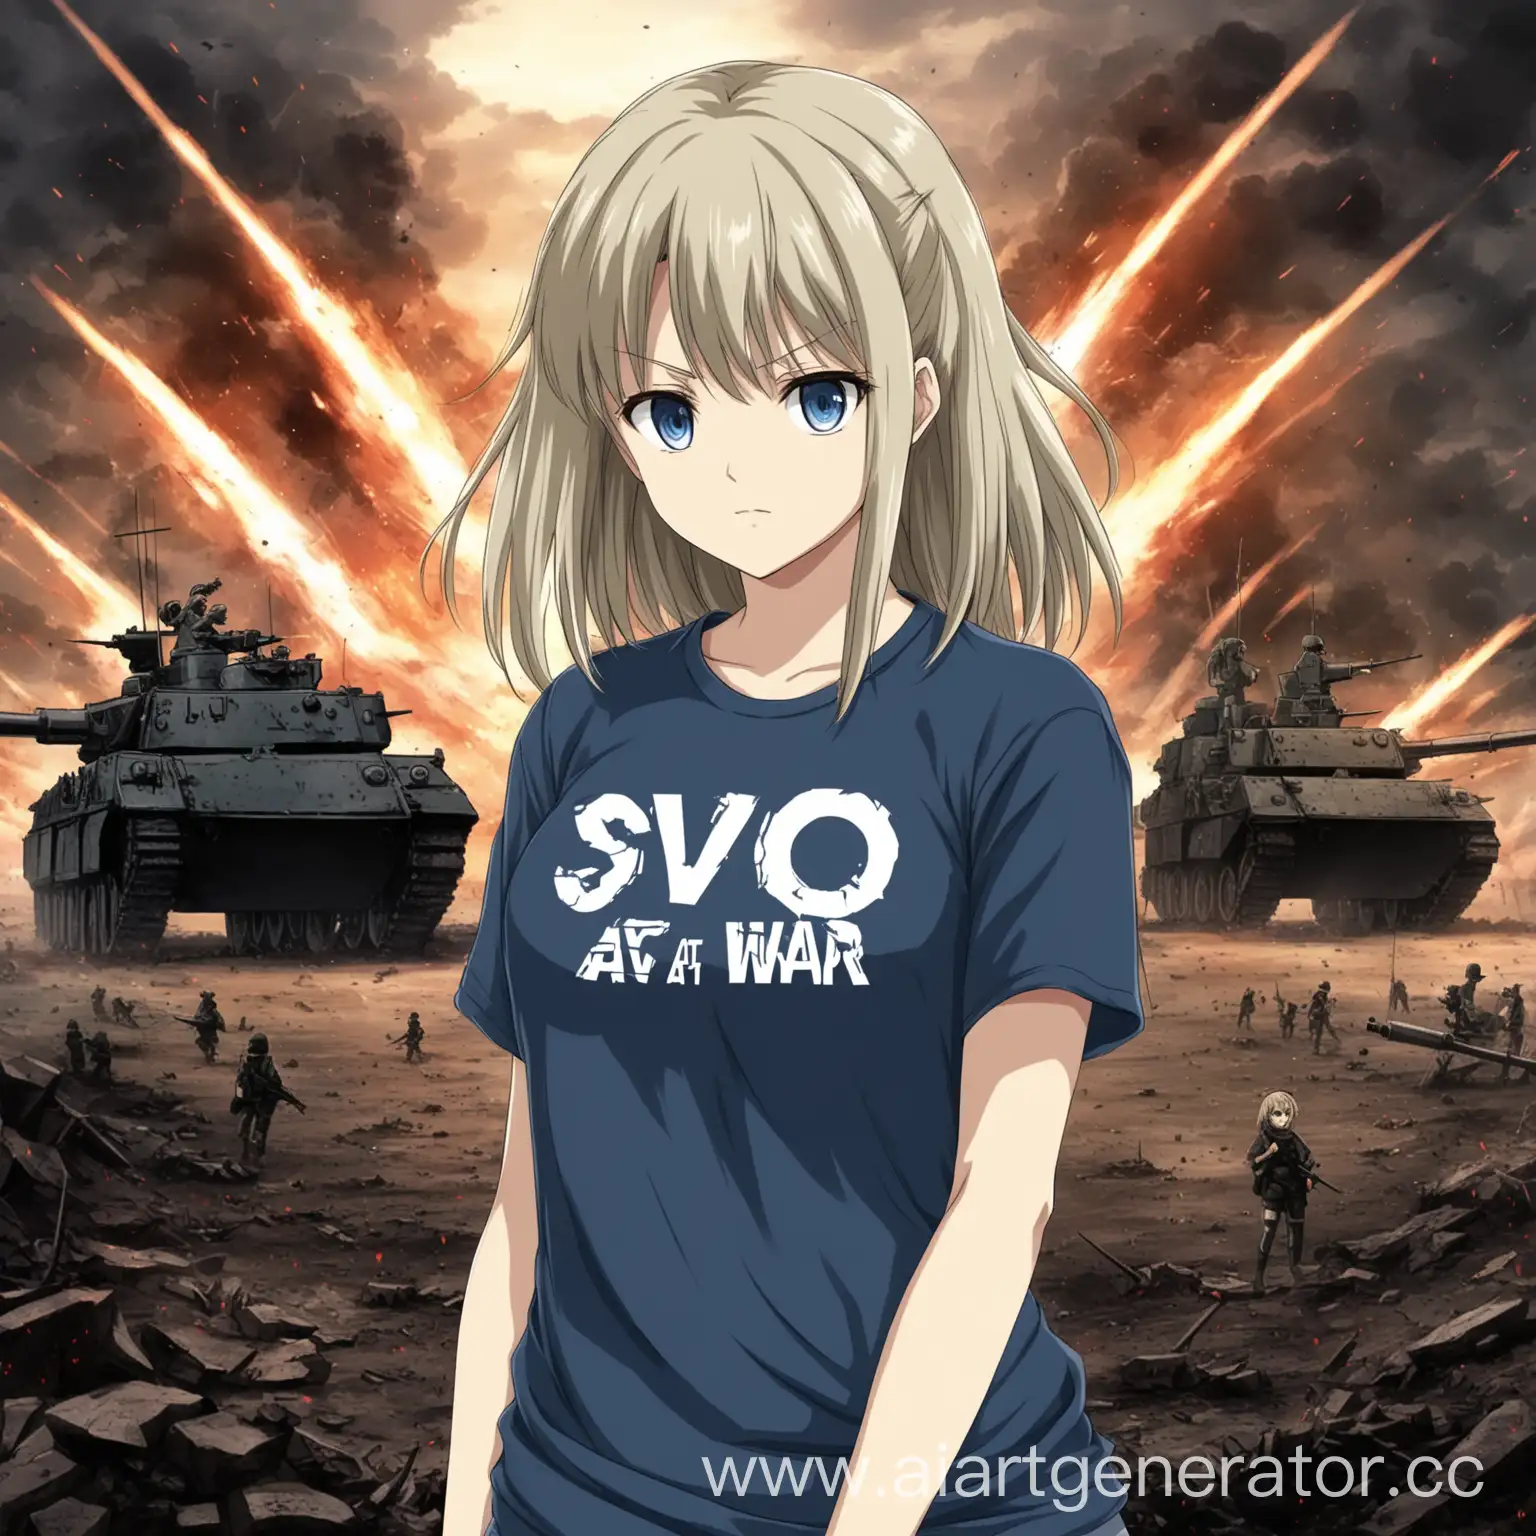 Аниме девушка в футболке с надписью "SVO" на войне